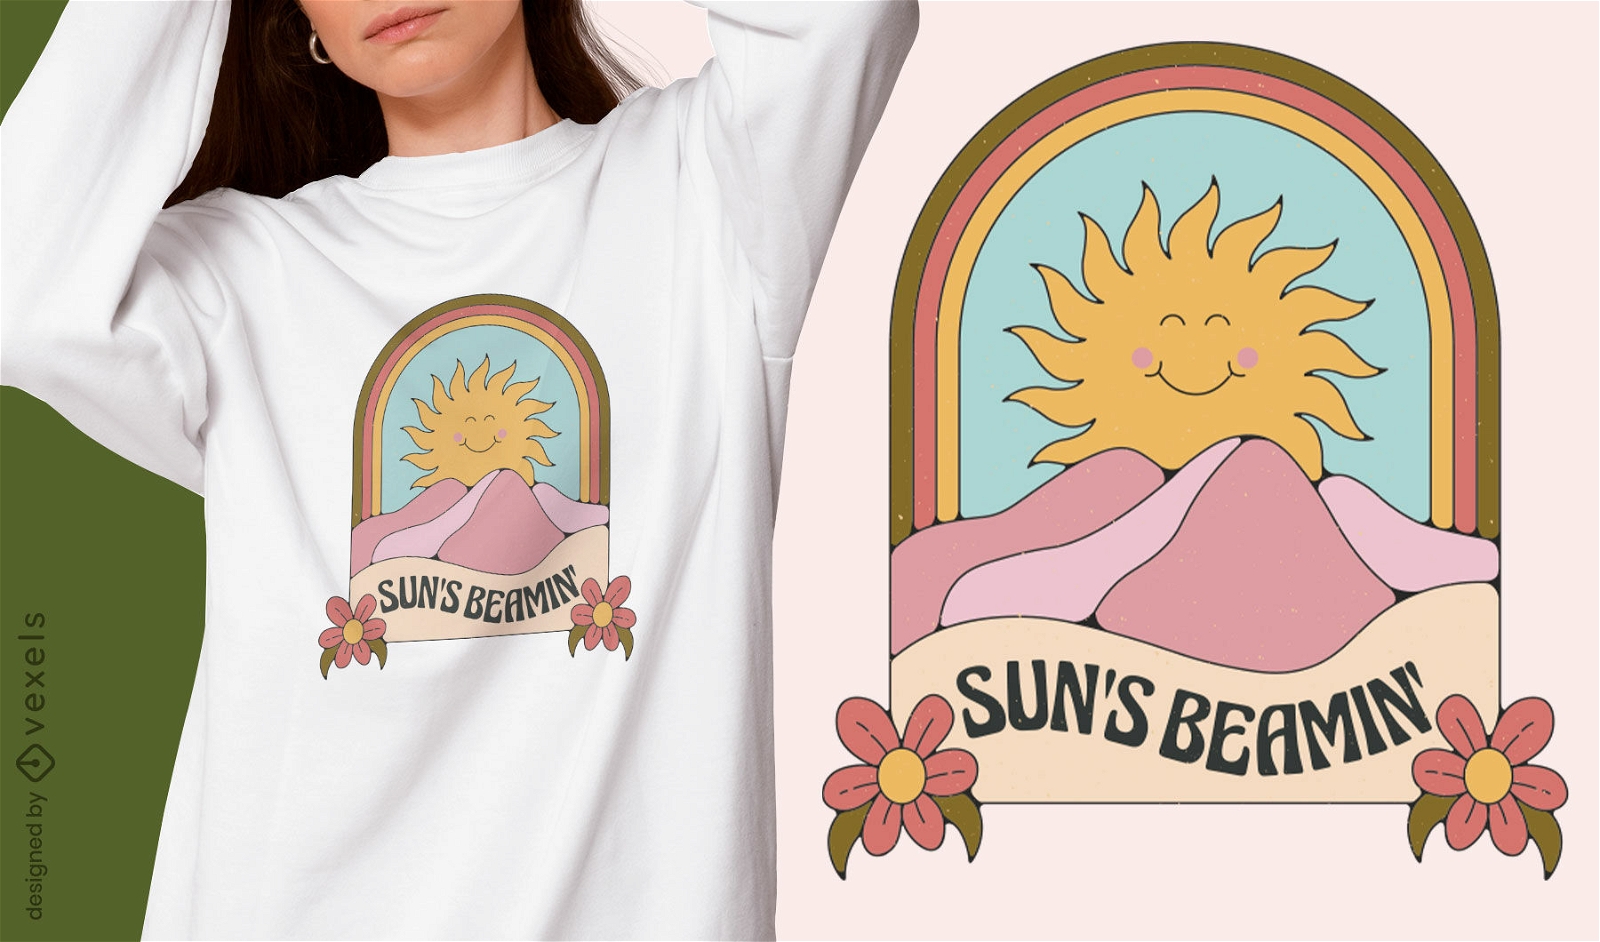 Schönes T-Shirt-Design mit Sonnensimulation